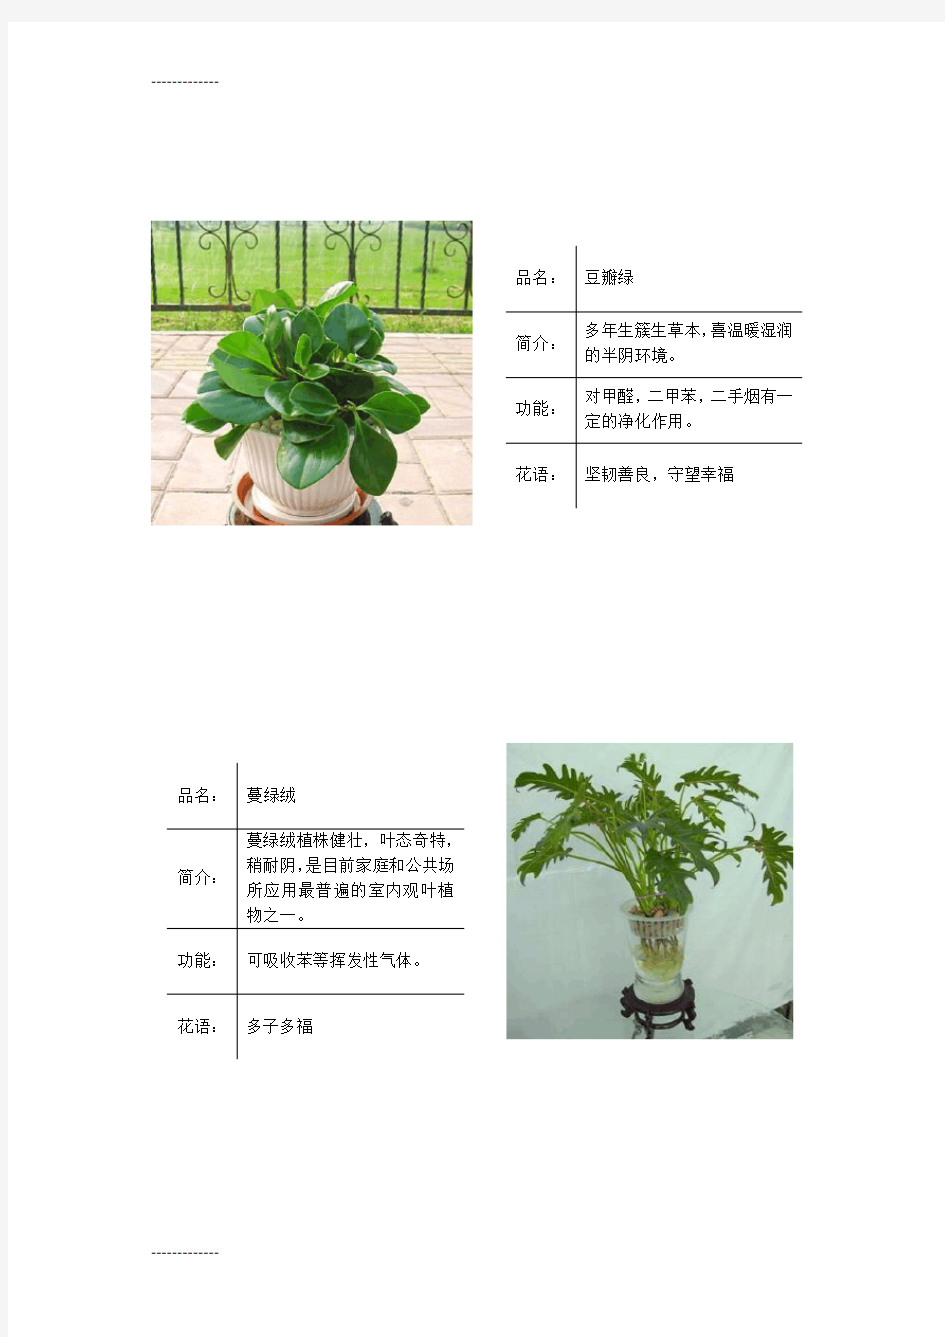 (整理)常见绿色植物图表